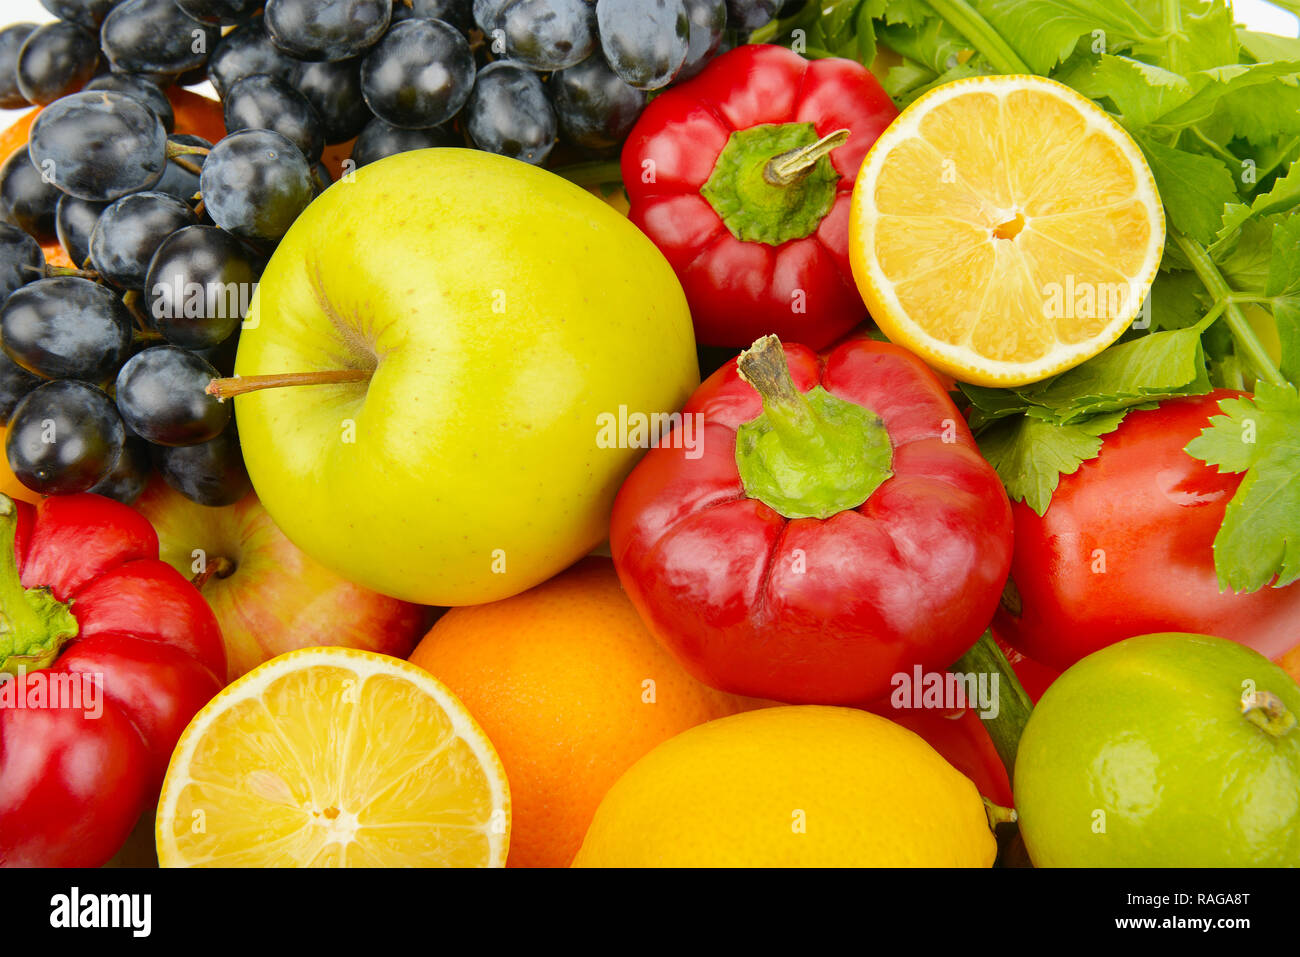 Magnifique cadre d'un ensemble de légumes et fruits Banque D'Images